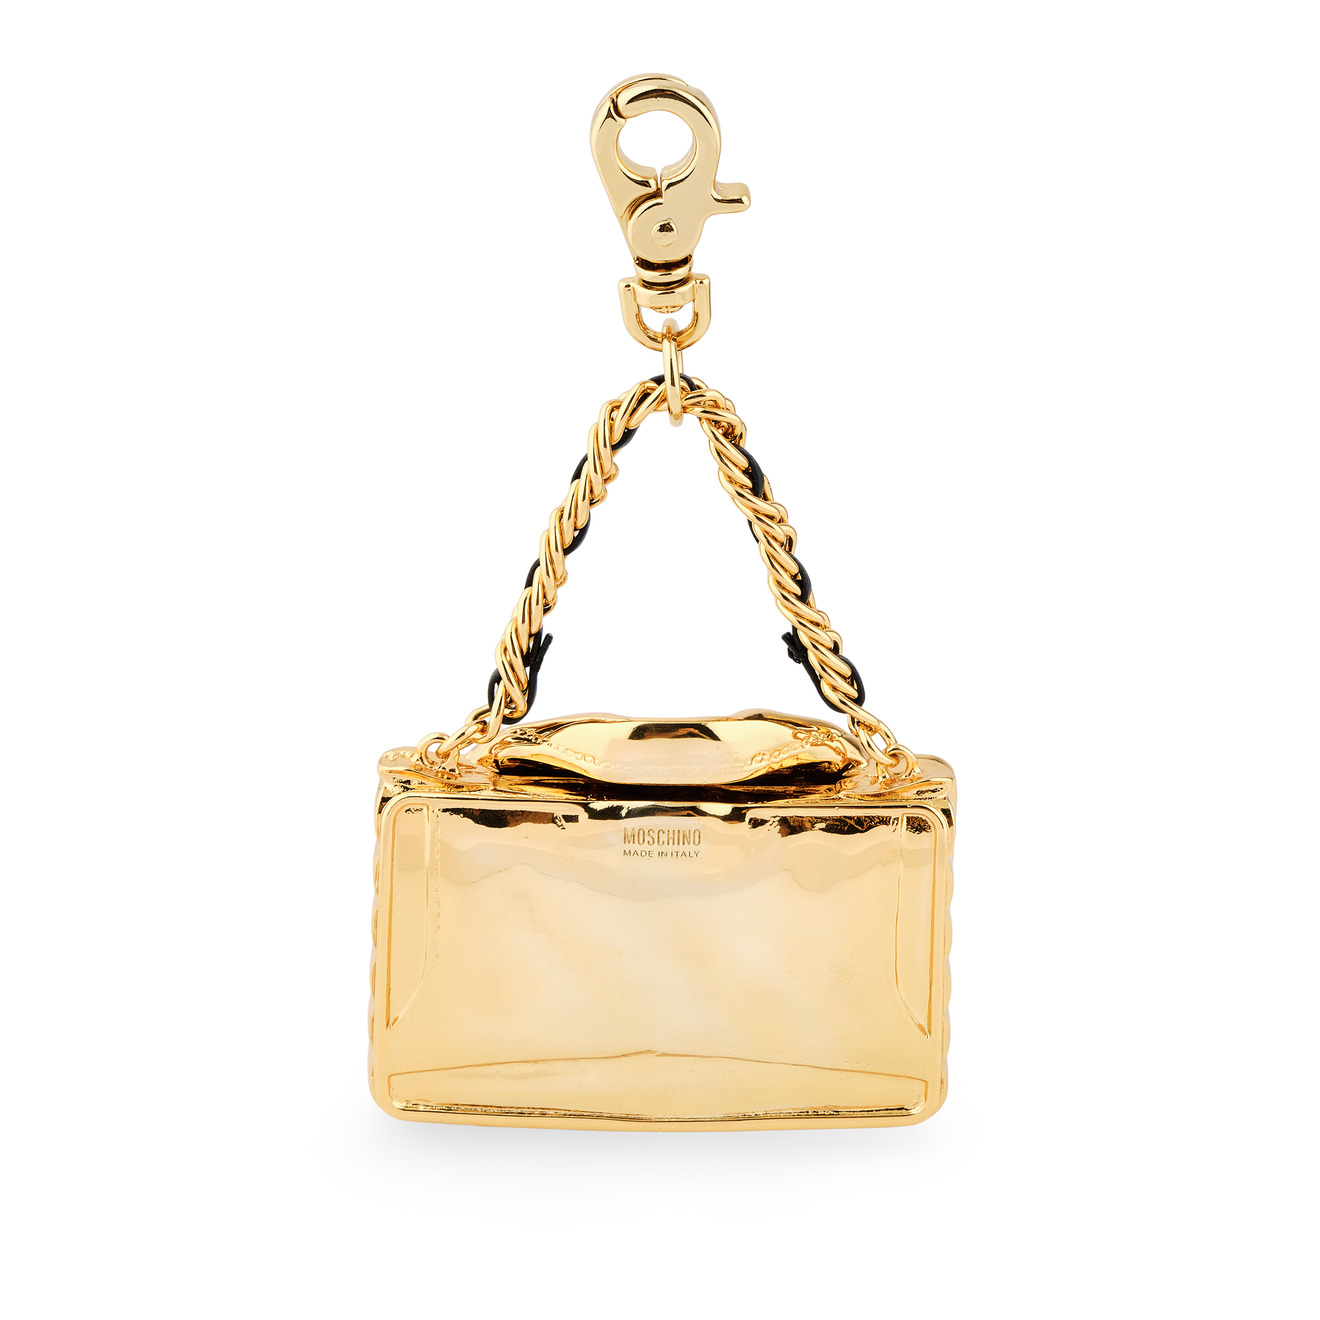 Moschino Золотистый брелок в виде сумки модный креативный индивидуальный брелок стразы в виде сумки с губной помадой автомобильный брелок женский школьный брелок с подвеской ме